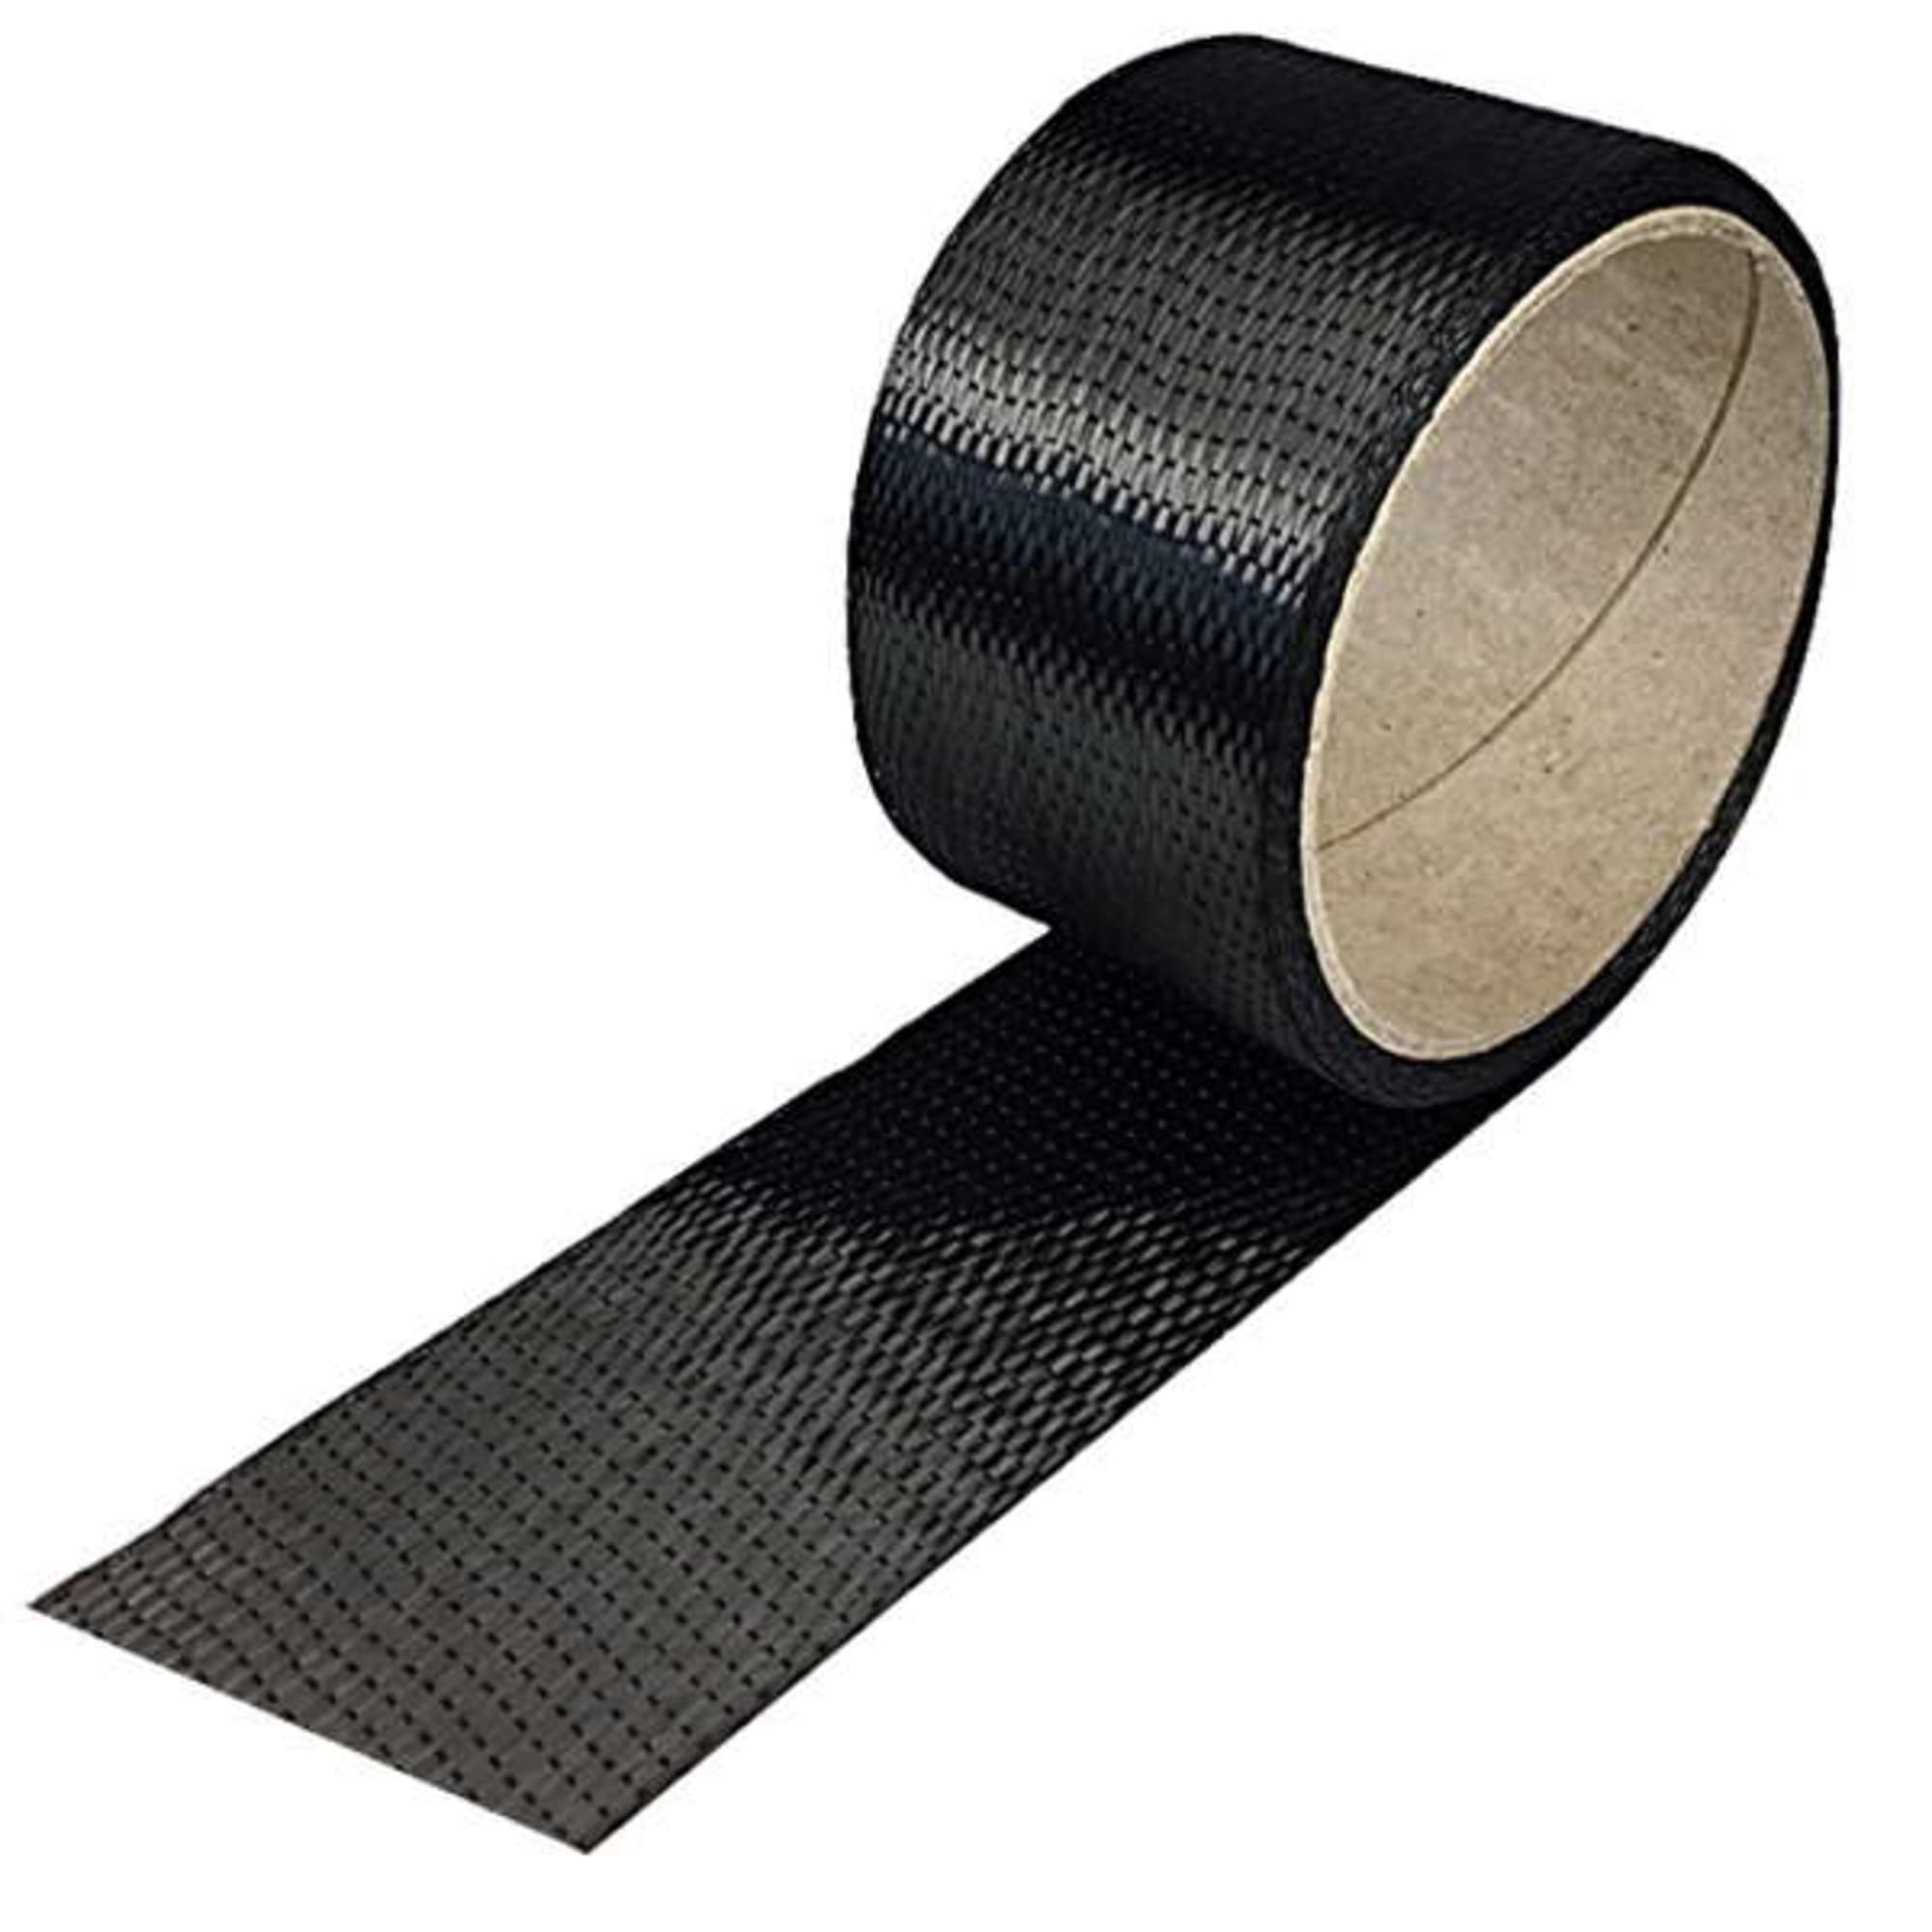 Carbon fibre tape 200 g/m² (unidirectional) 50 mm